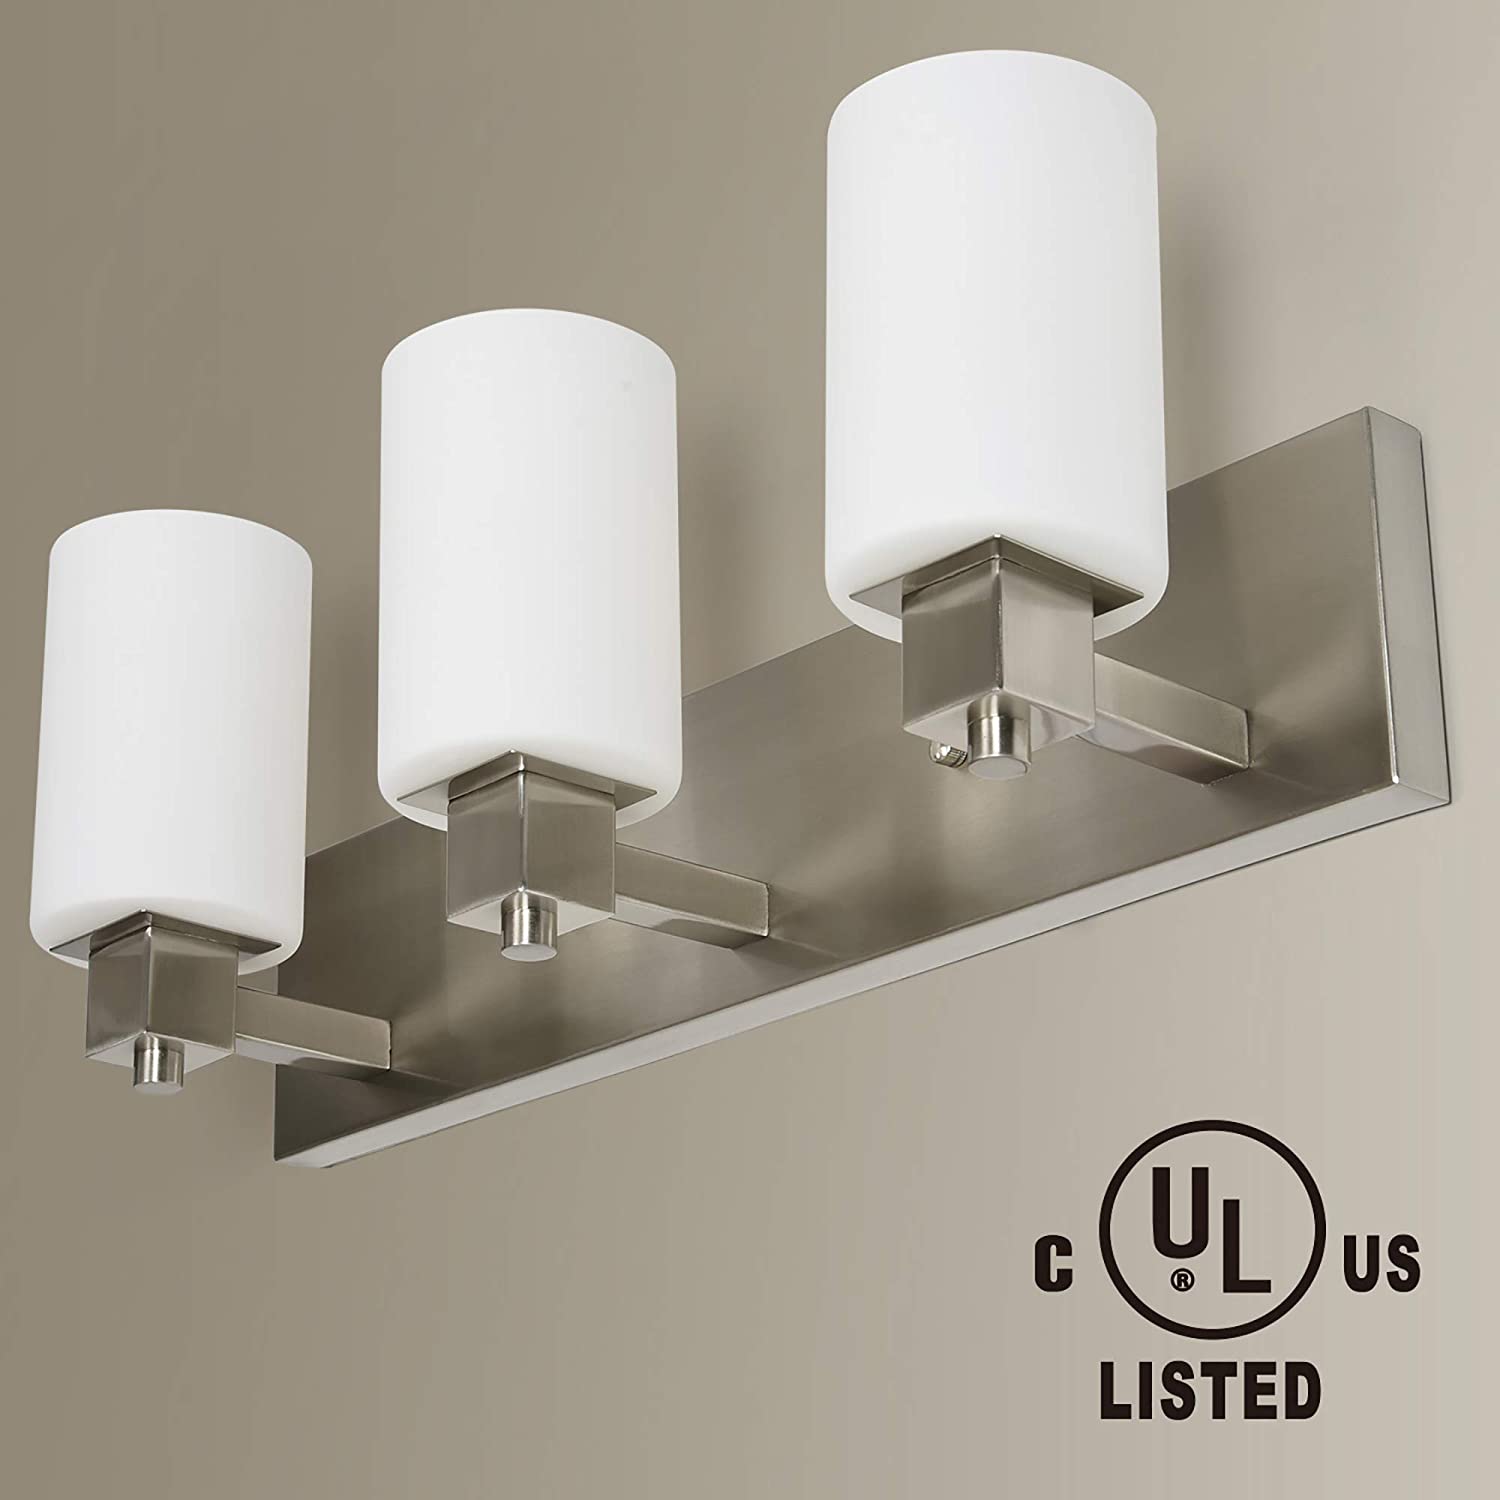 UL-Listed 3 Light Bathroom Vanity Light Fixture